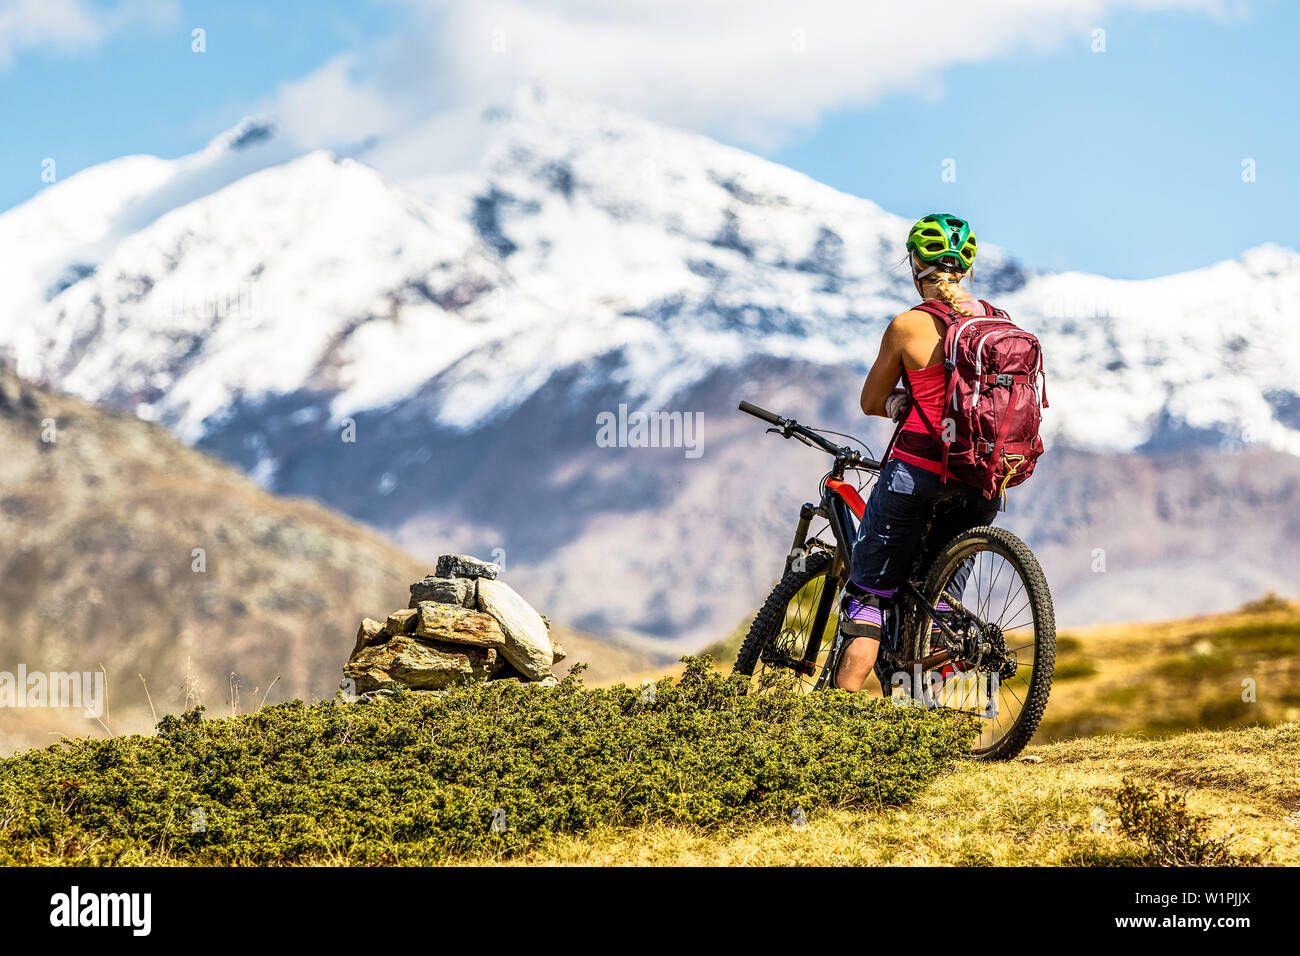 Jeune femme prend une pause sur son mountainbike et jouit de la vue sur les montagnes Ortler, Bormio, Sondrino,Lombardie, le Tyrol du Sud, Italie Banque D'Images